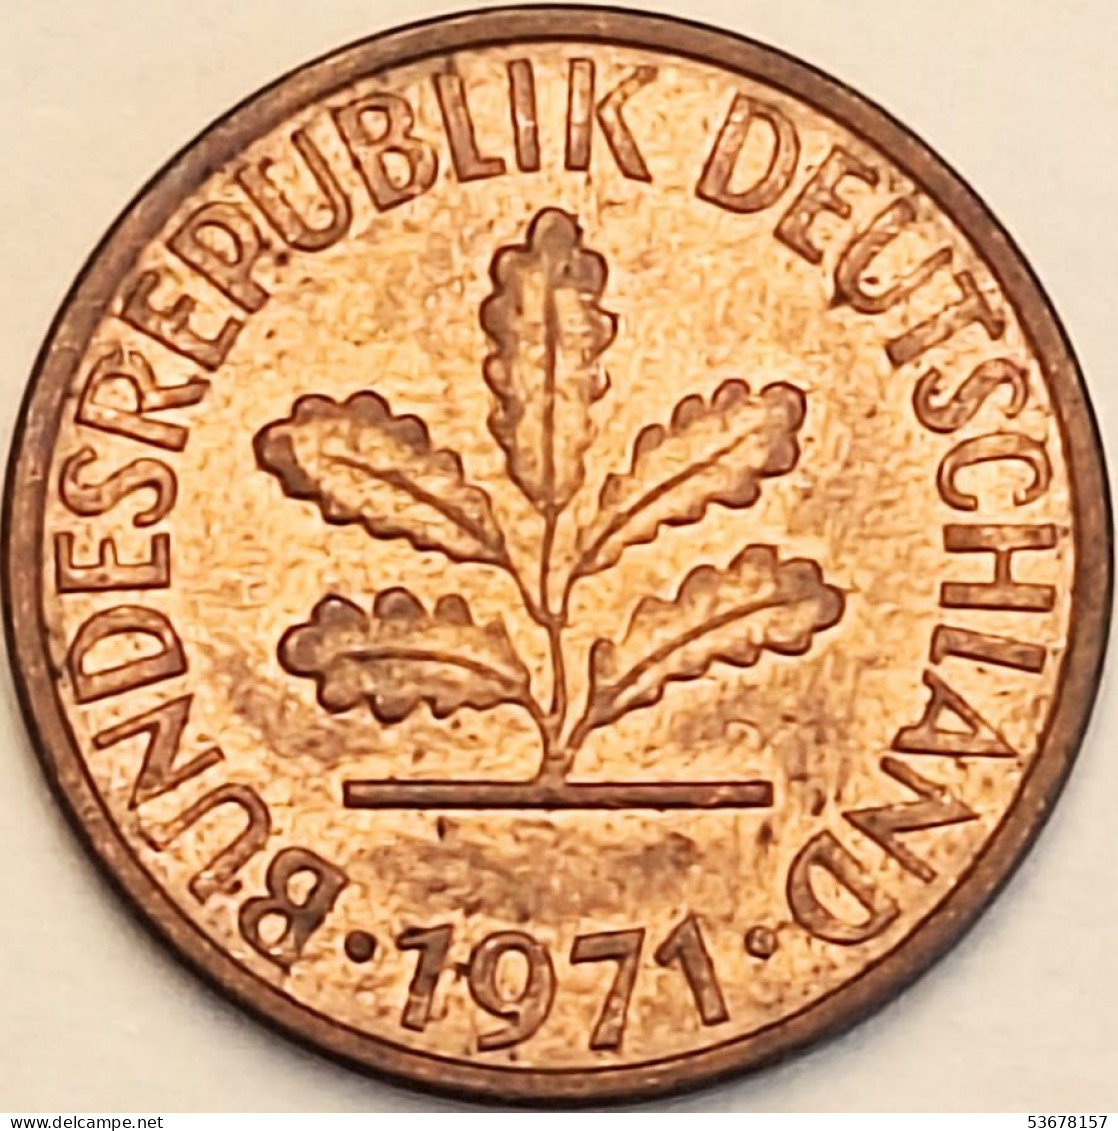 Germany Federal Republic - Pfennig 1971 J, KM# 105 (#4458) - 1 Pfennig